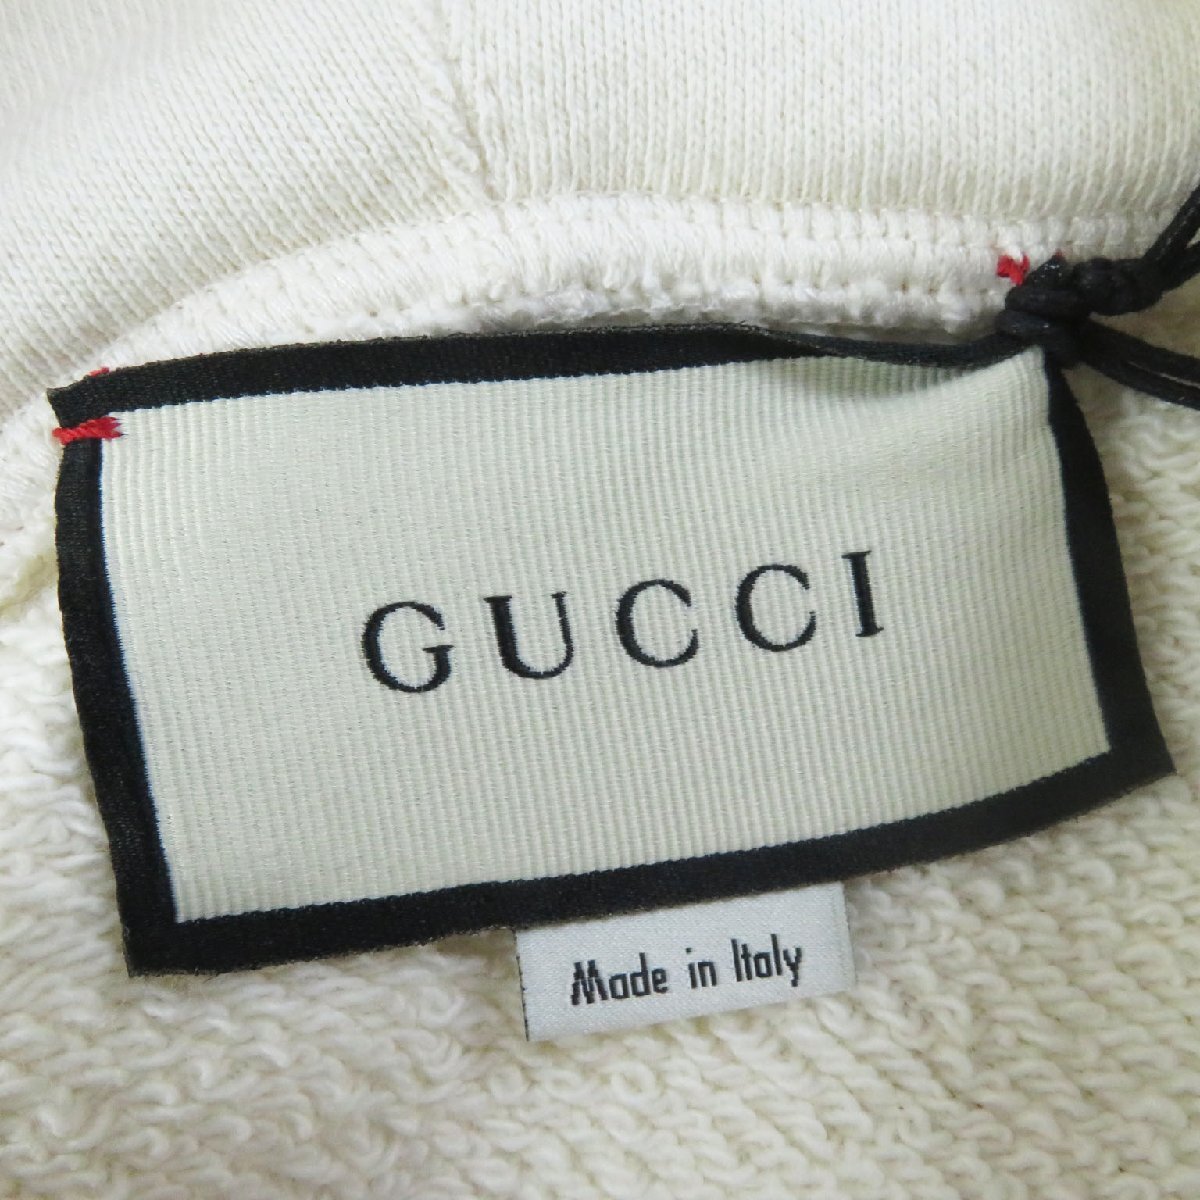  превосходный товар GUCCI Gucci 19AW 469251 хлопок 100% передний принт ввод Parker слоновая кость XS Италия производства стандартный товар женский 